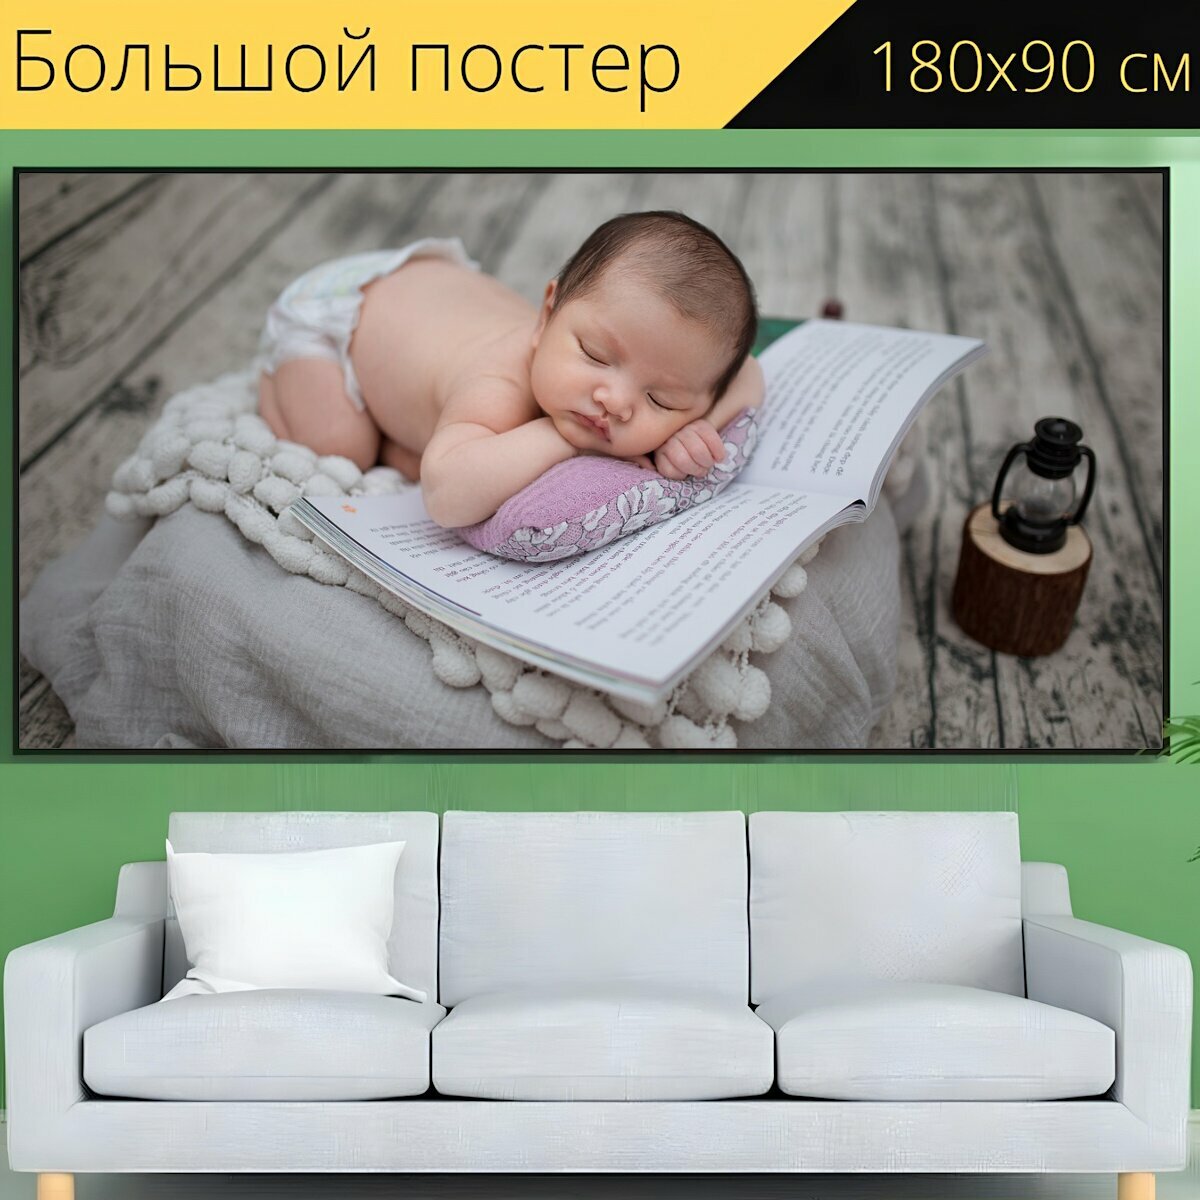 Большой постер "Новорожденный, камеры, фотография" 180 x 90 см. для интерьера